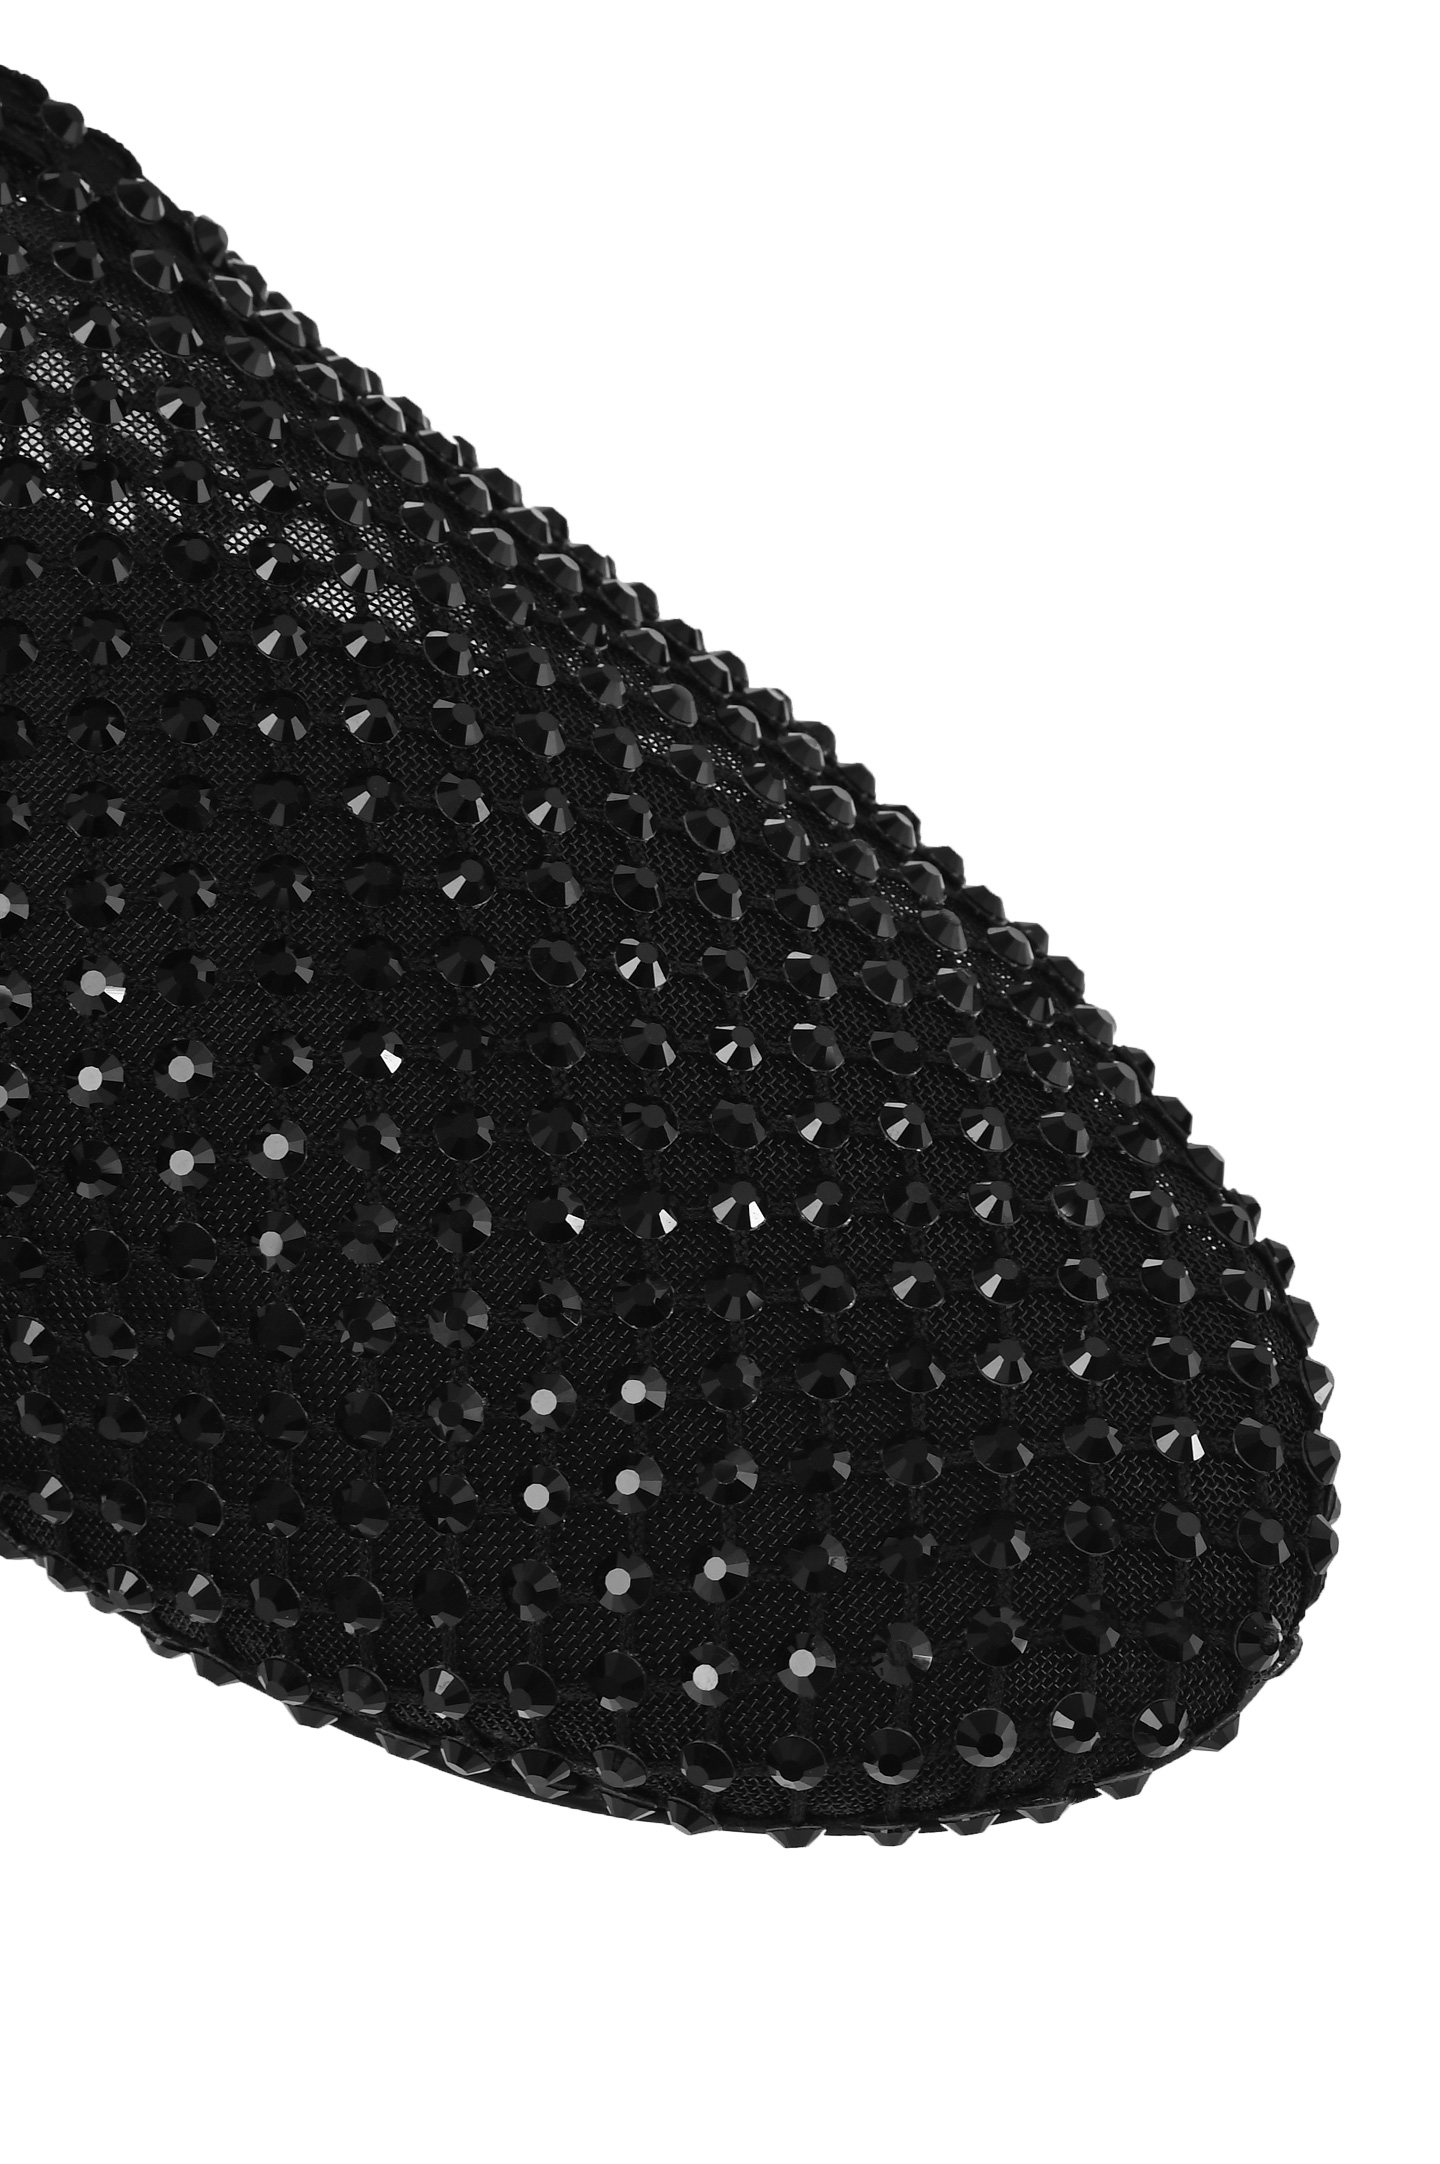 Шлепанцы сетка со стразами LE SILLA 0180B020MTPPSAS933, цвет: Черный, Женский